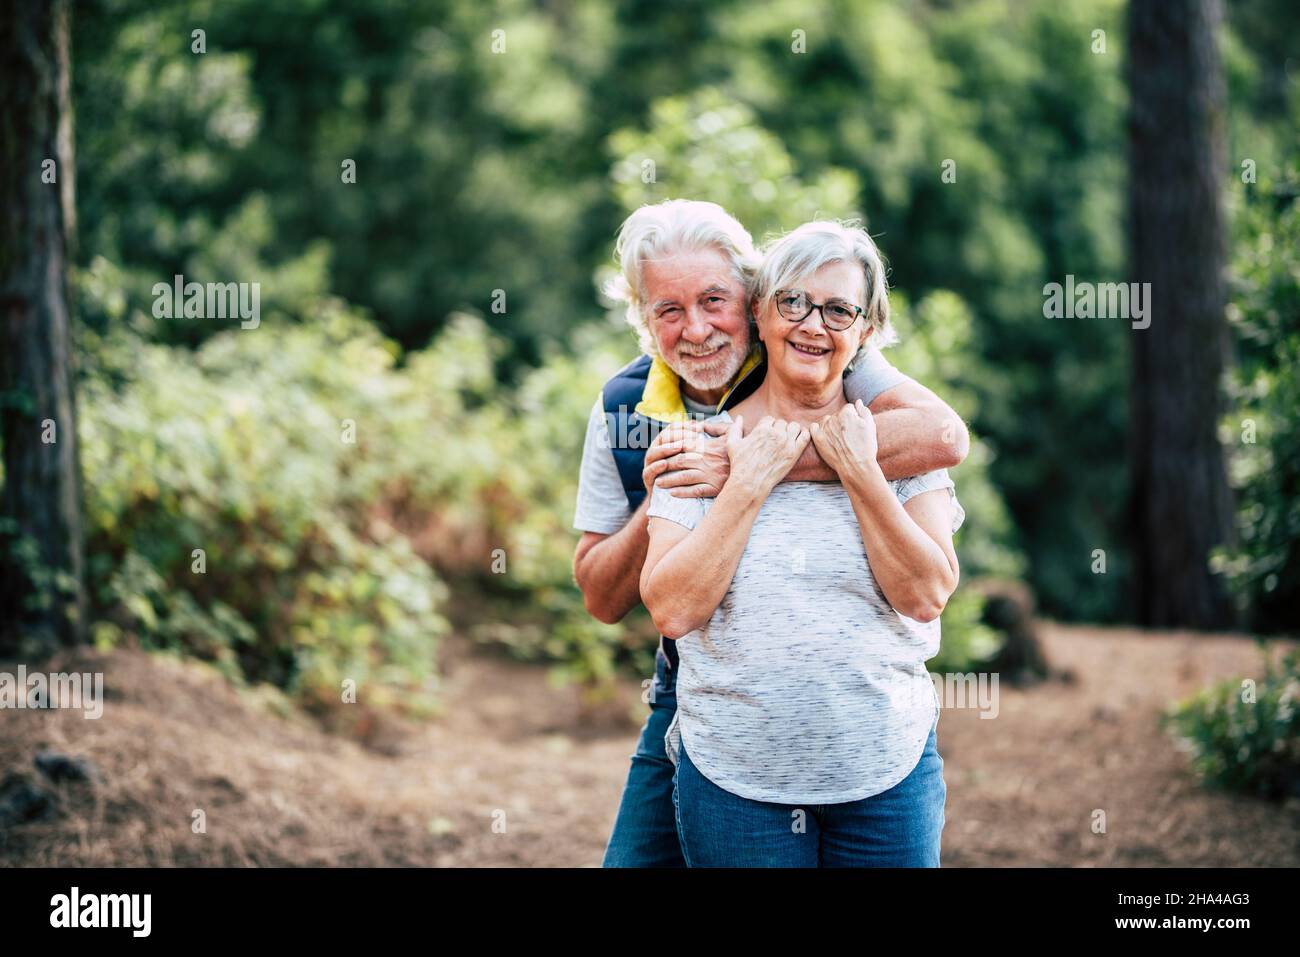 Romantisches liebendes glückliches Seniorenpaar, das sich umarmt, während es im Wald steht, lächelnder Mann, der Frau von hinten umarmt Porträt eines romantischen alternden alten Paares, das Freizeit im Wald verbringt Stockfoto